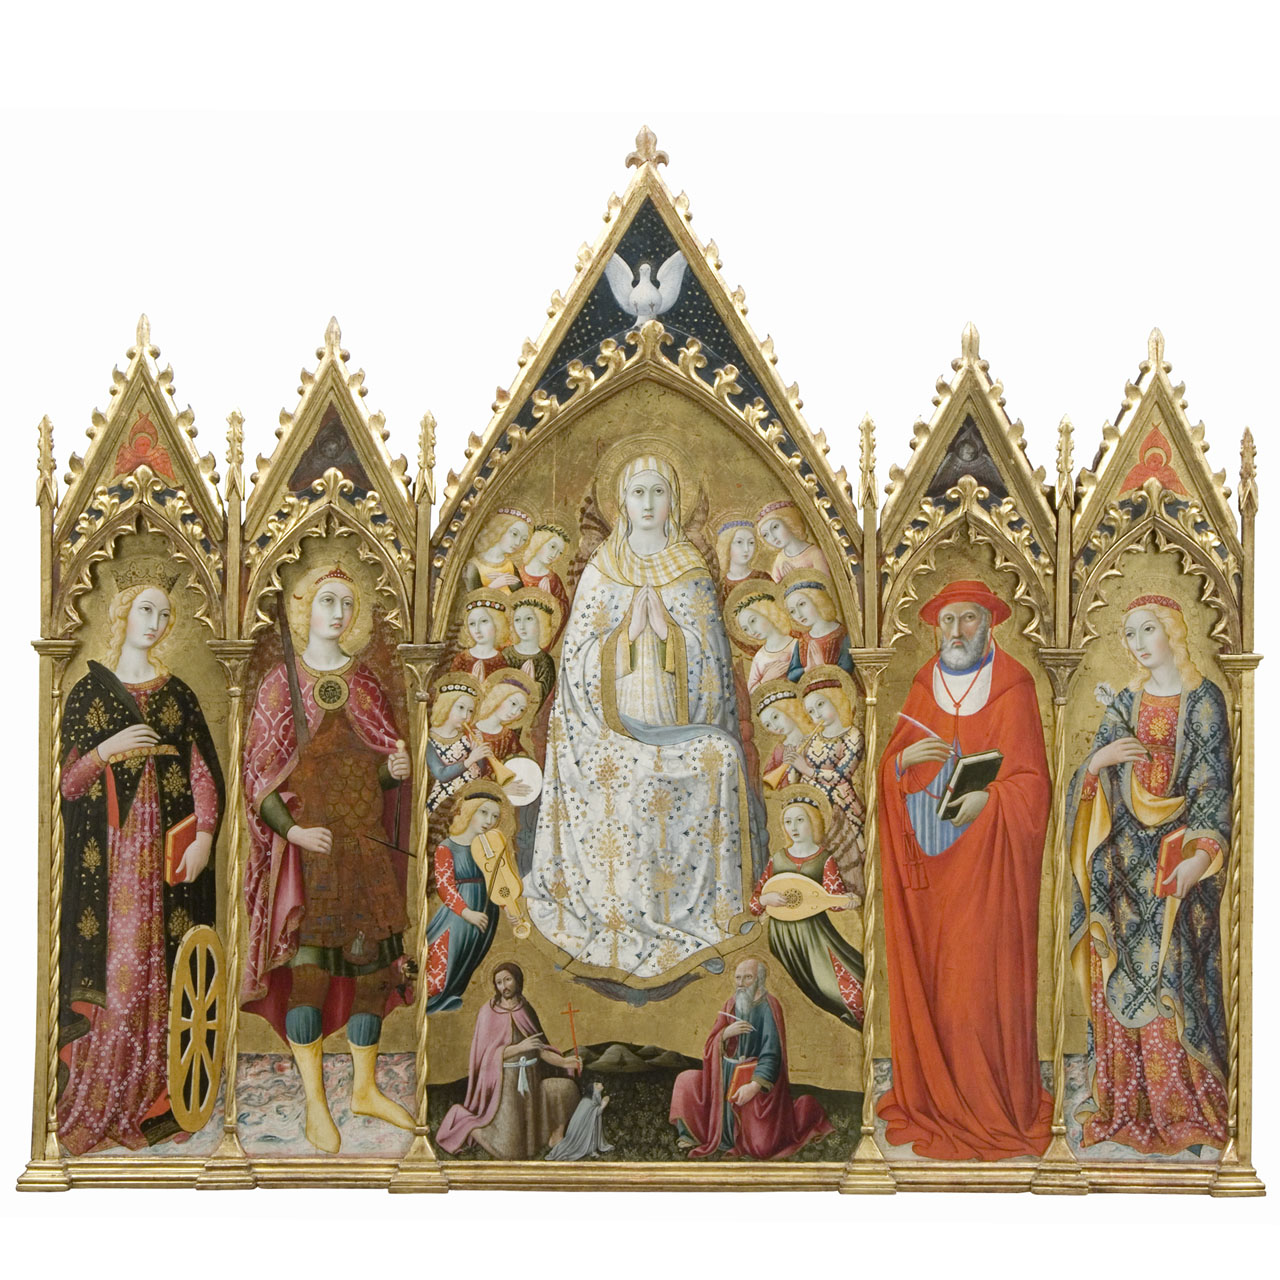 Polittico dell'Assunta, Madonna Assunta con angeli musicanti, Santi e donatore (polittico) di Sano di Pietro (sec. XV)